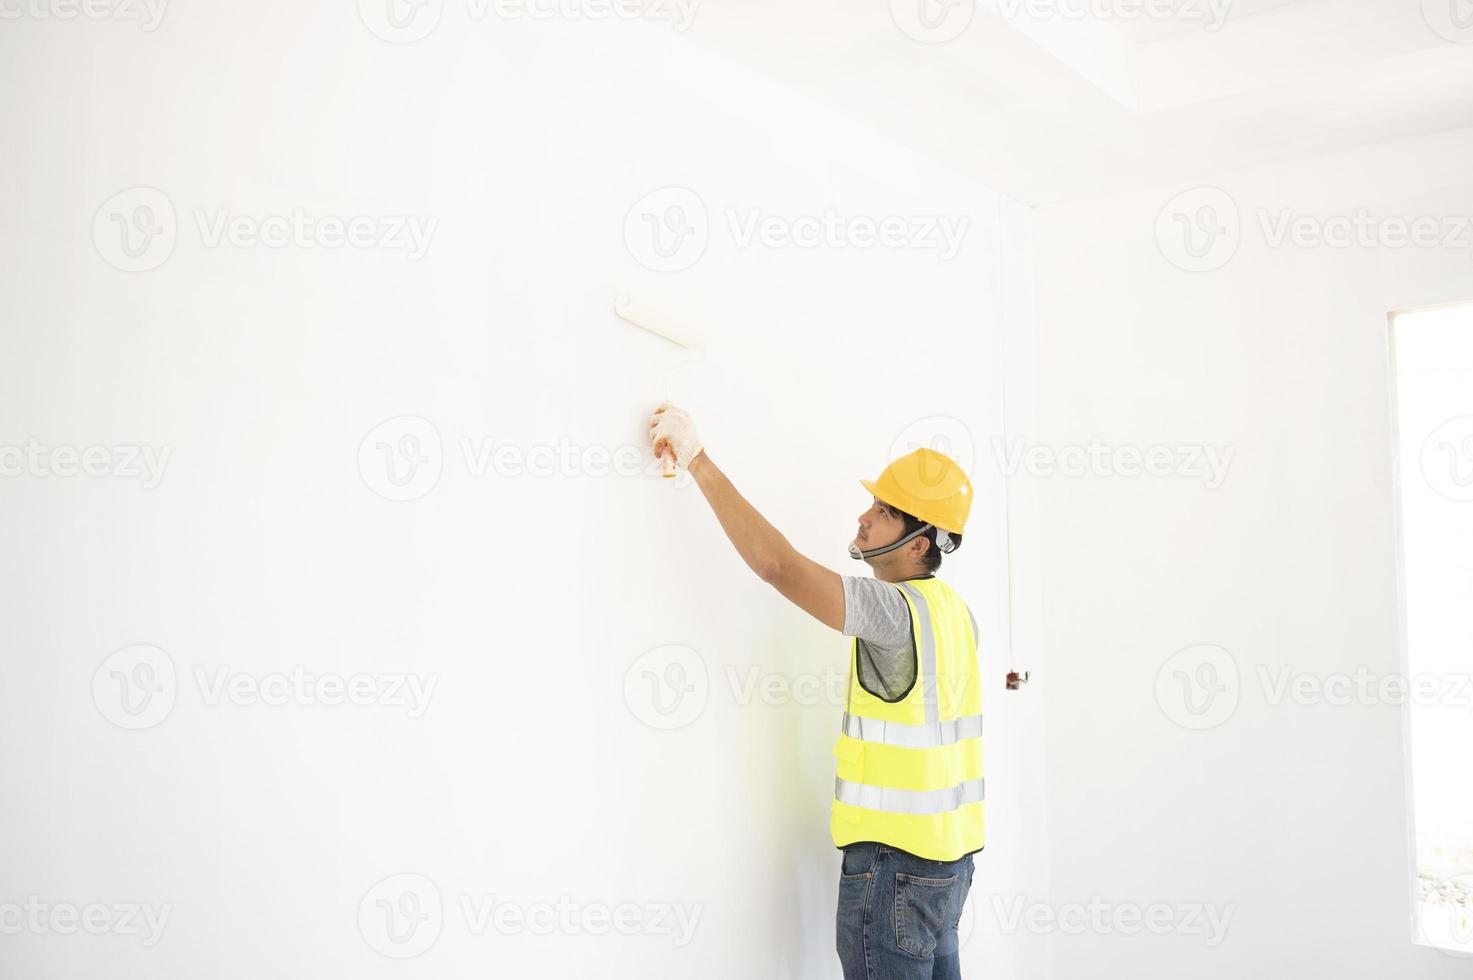 en vy av målaren bakom väggmålaren med en målarrulle och delad hink på ett stort tomt utrymme med en trätrappa. foto